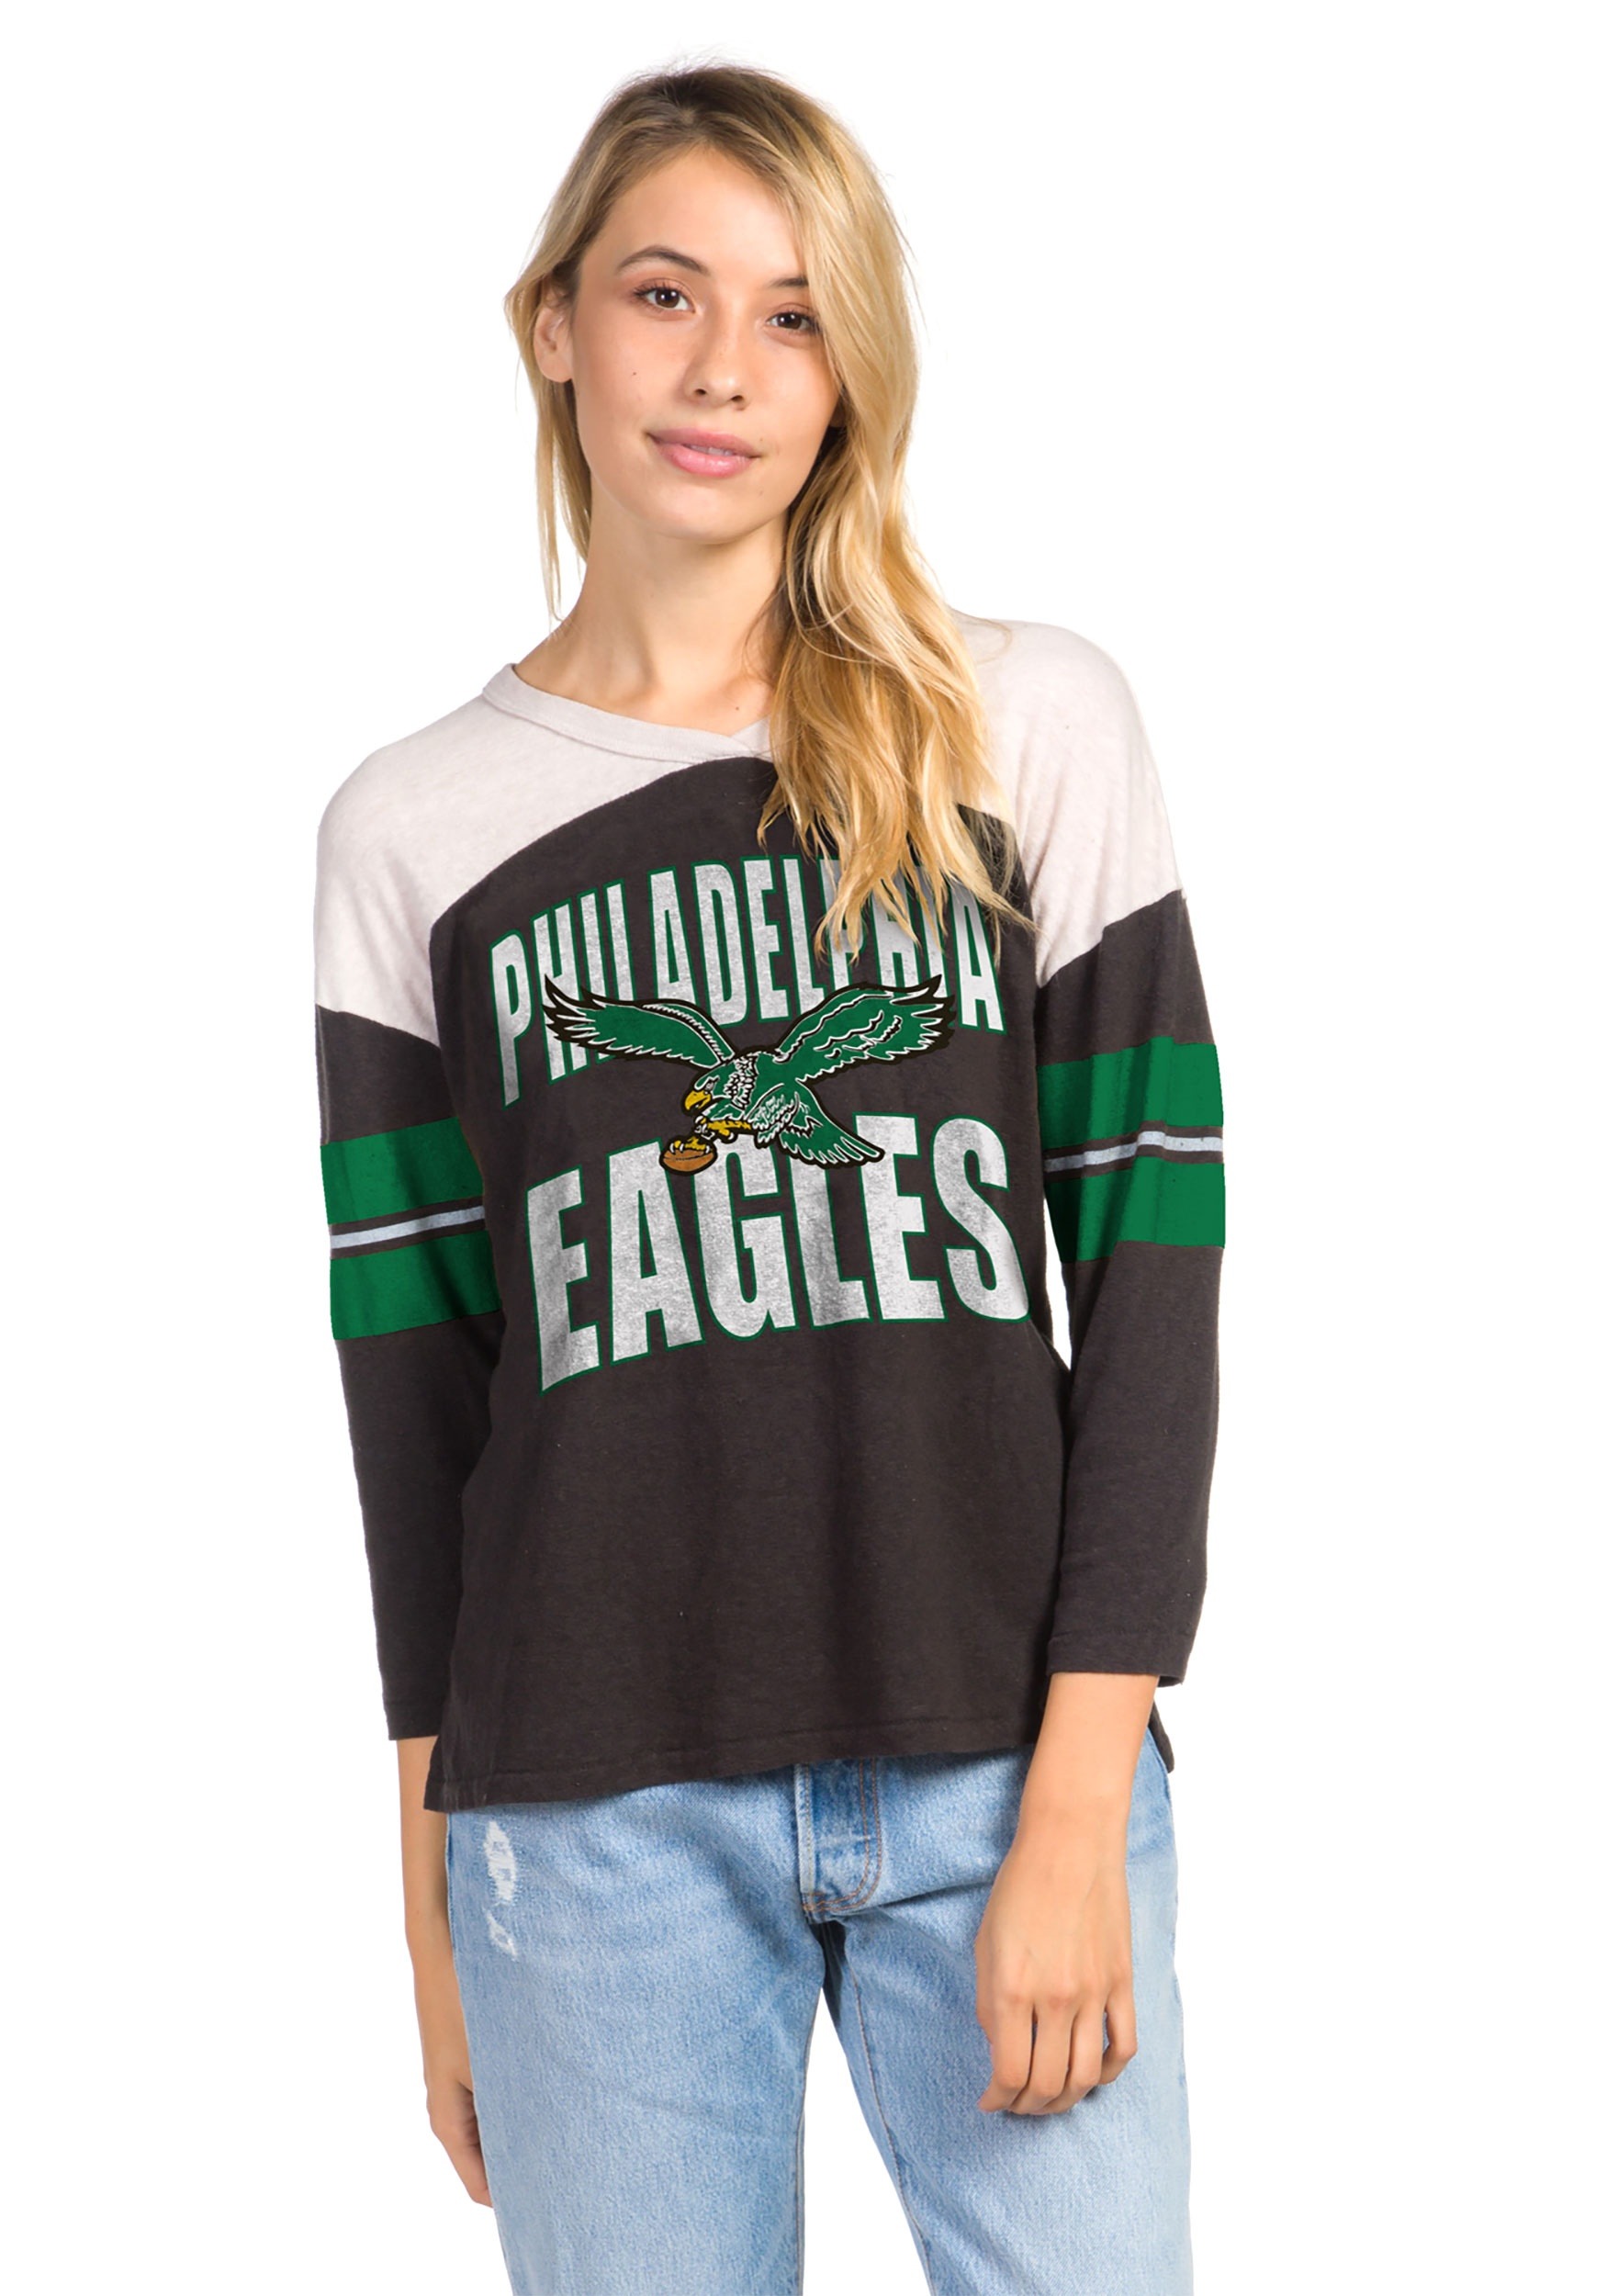 women's philadelphia eagles shirt